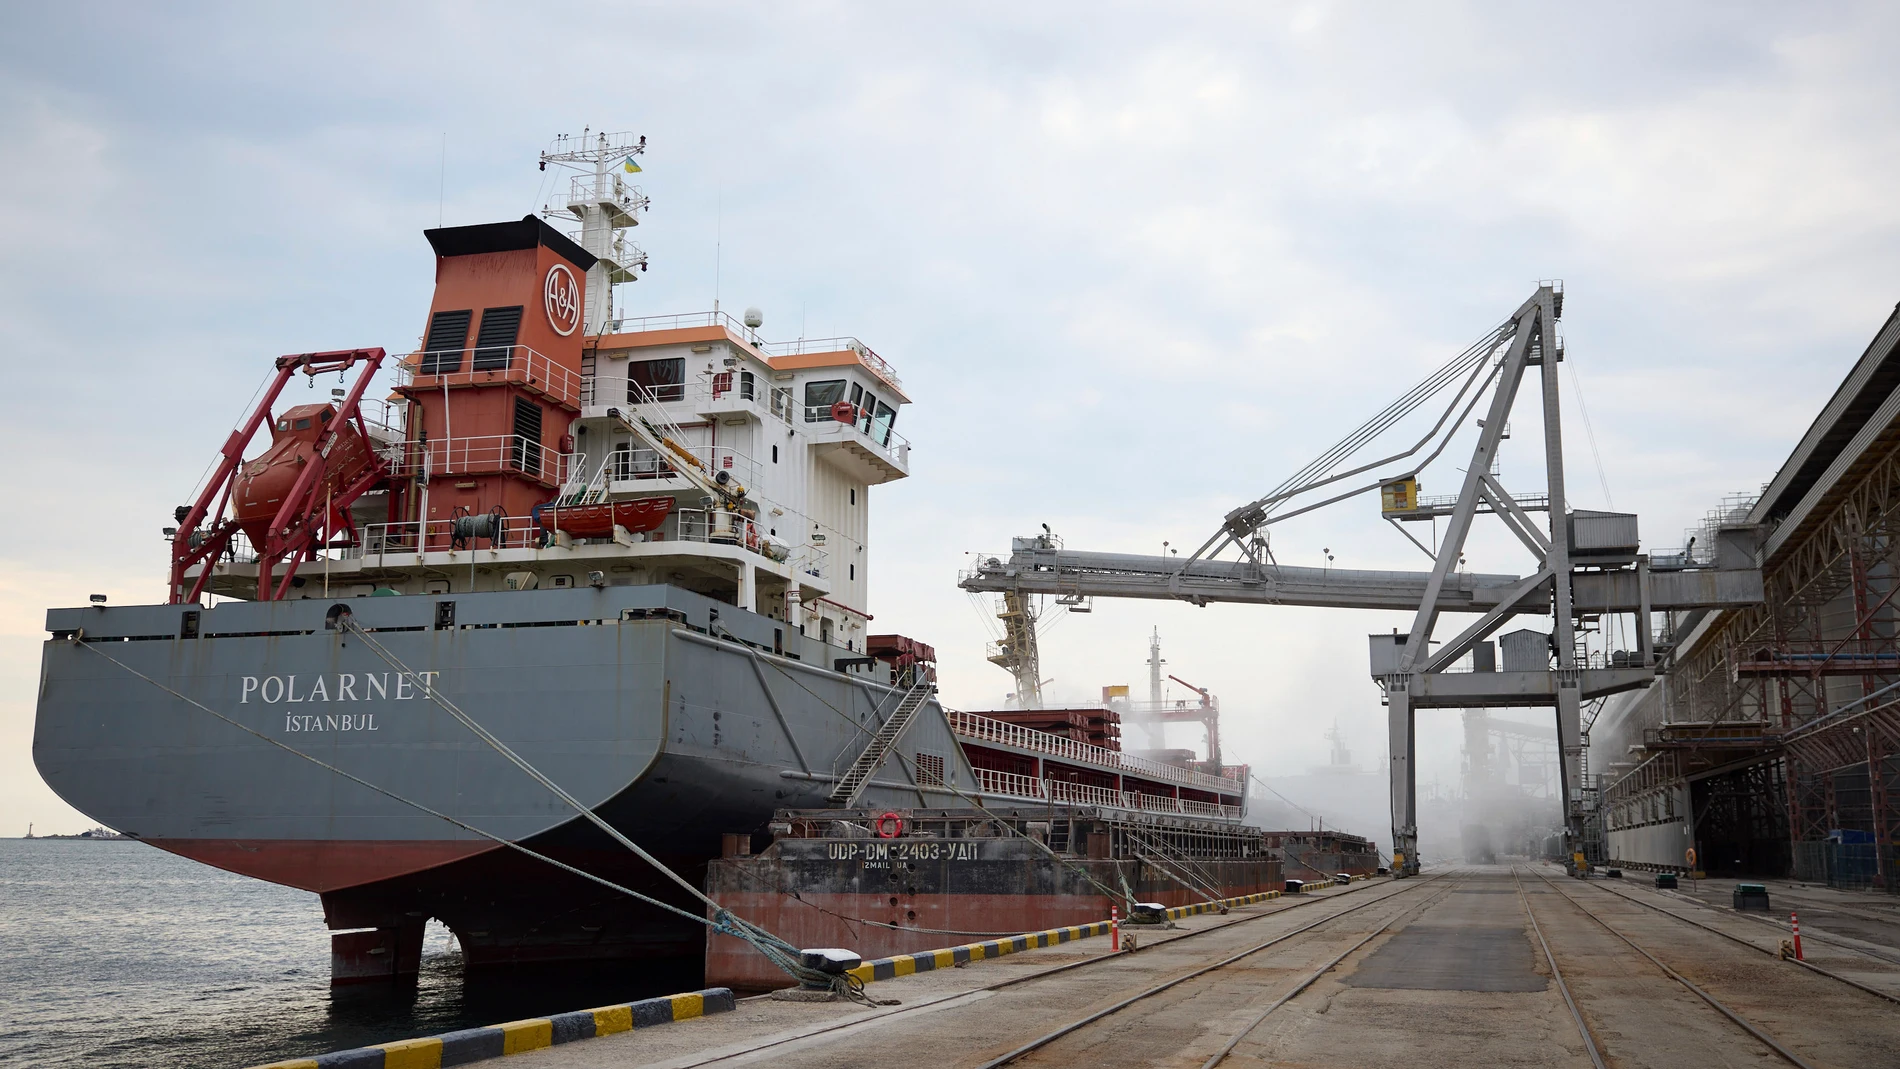 El carguero turco Polarnet mientras se carga de grano ucraniano en la región de Odesa, Ucrania.